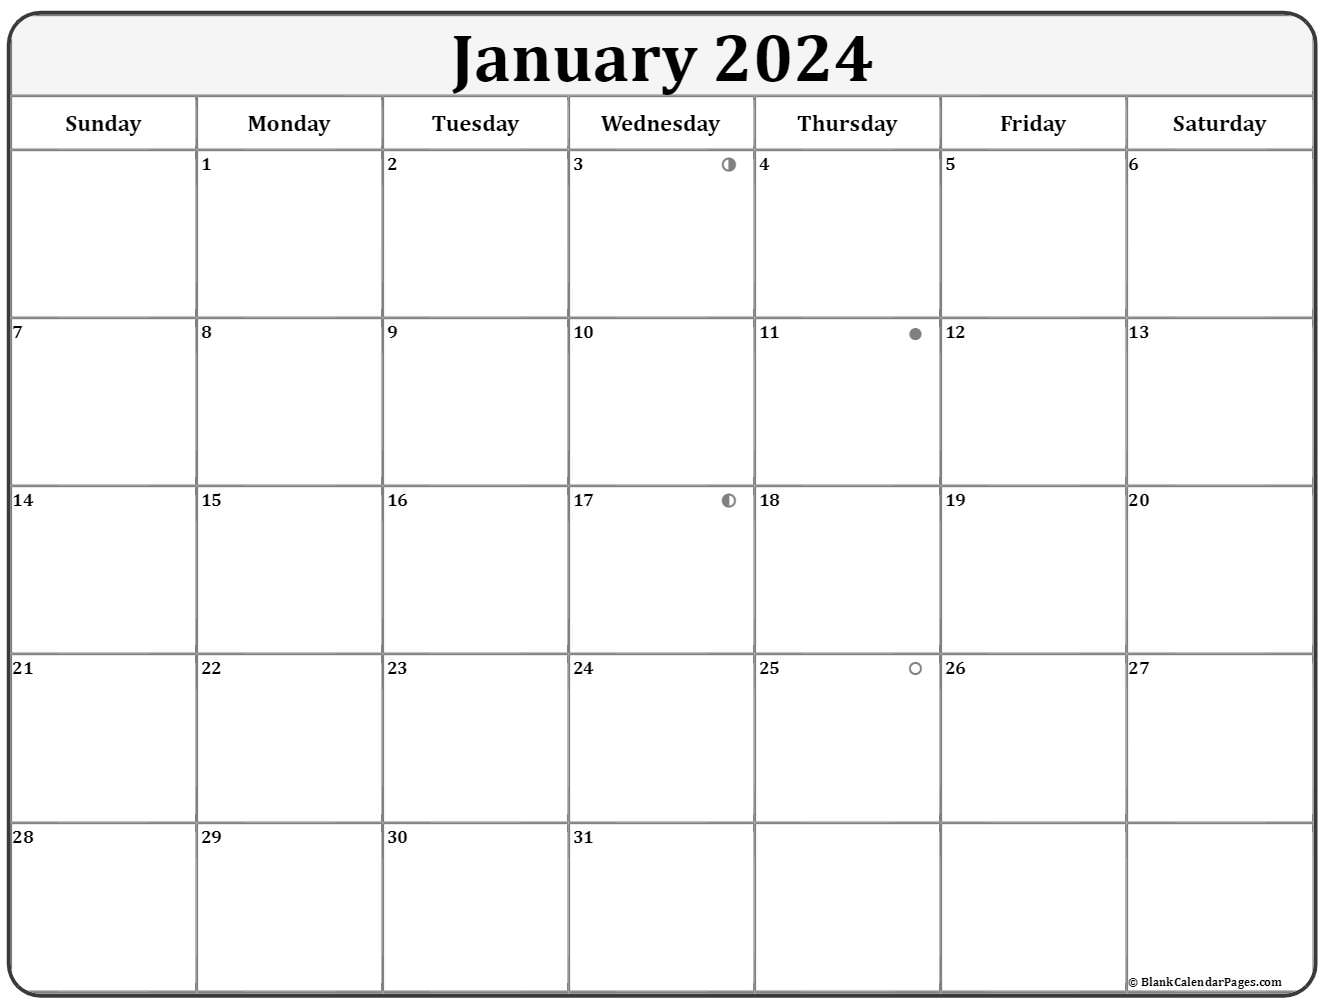 january-2020-lunar-calendar-moon-phase-calendar